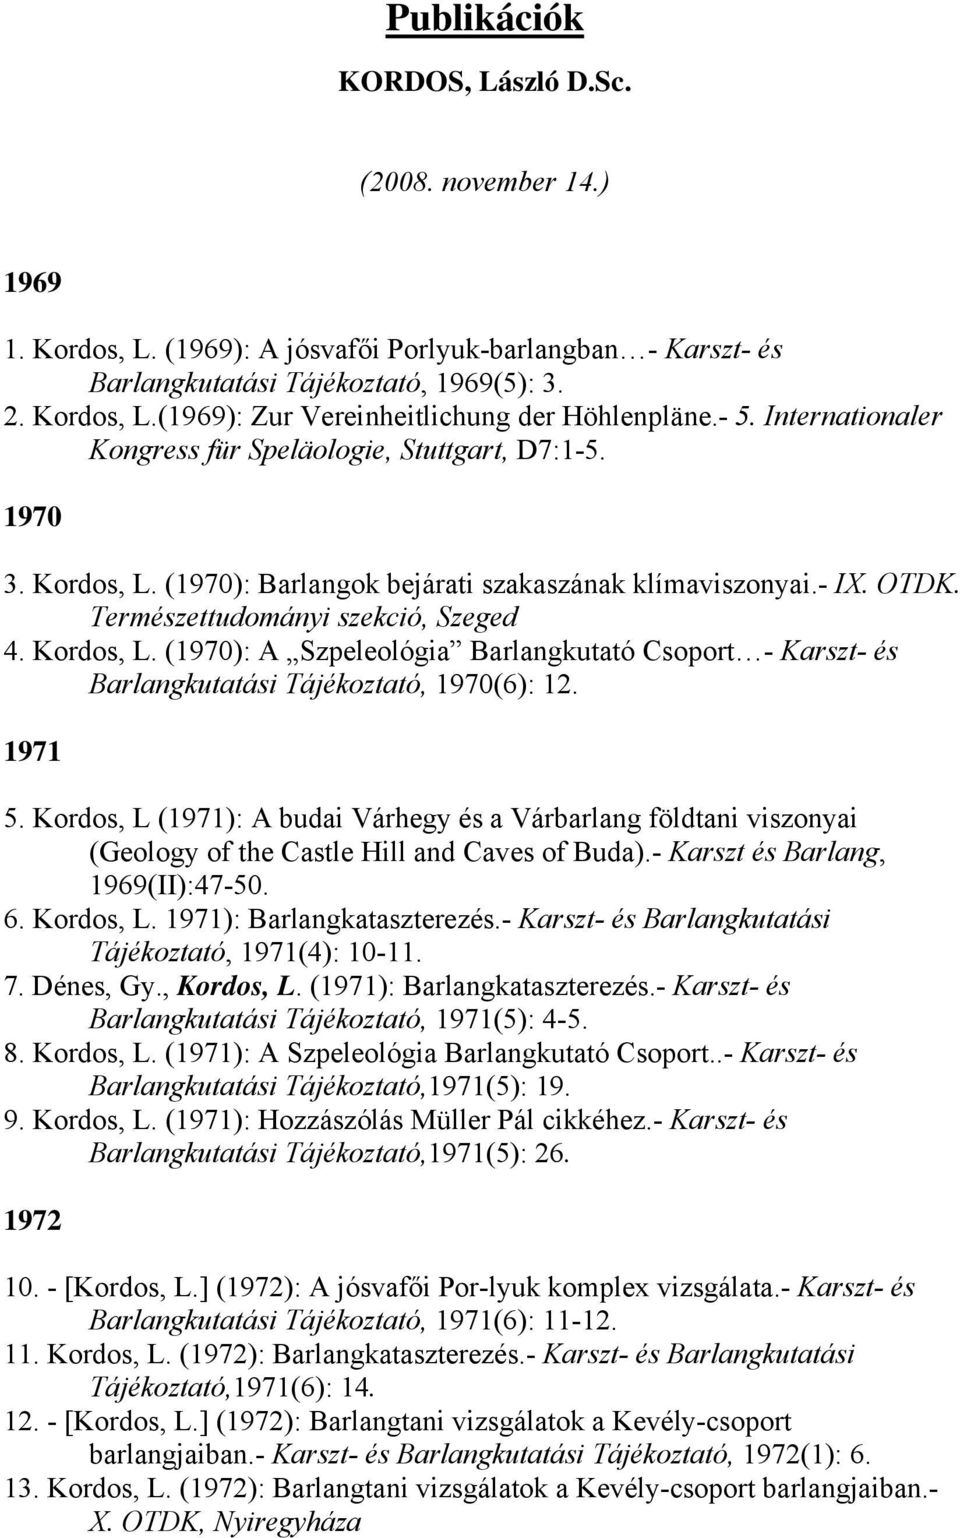 1971 5. Kordos, L (1971): A budai Várhegy és a Várbarlang földtani viszonyai (Geology of the Castle Hill and Caves of Buda).- Karszt és Barlang, 1969(II):47-50. 6. Kordos, L. 1971): Barlangkataszterezés.